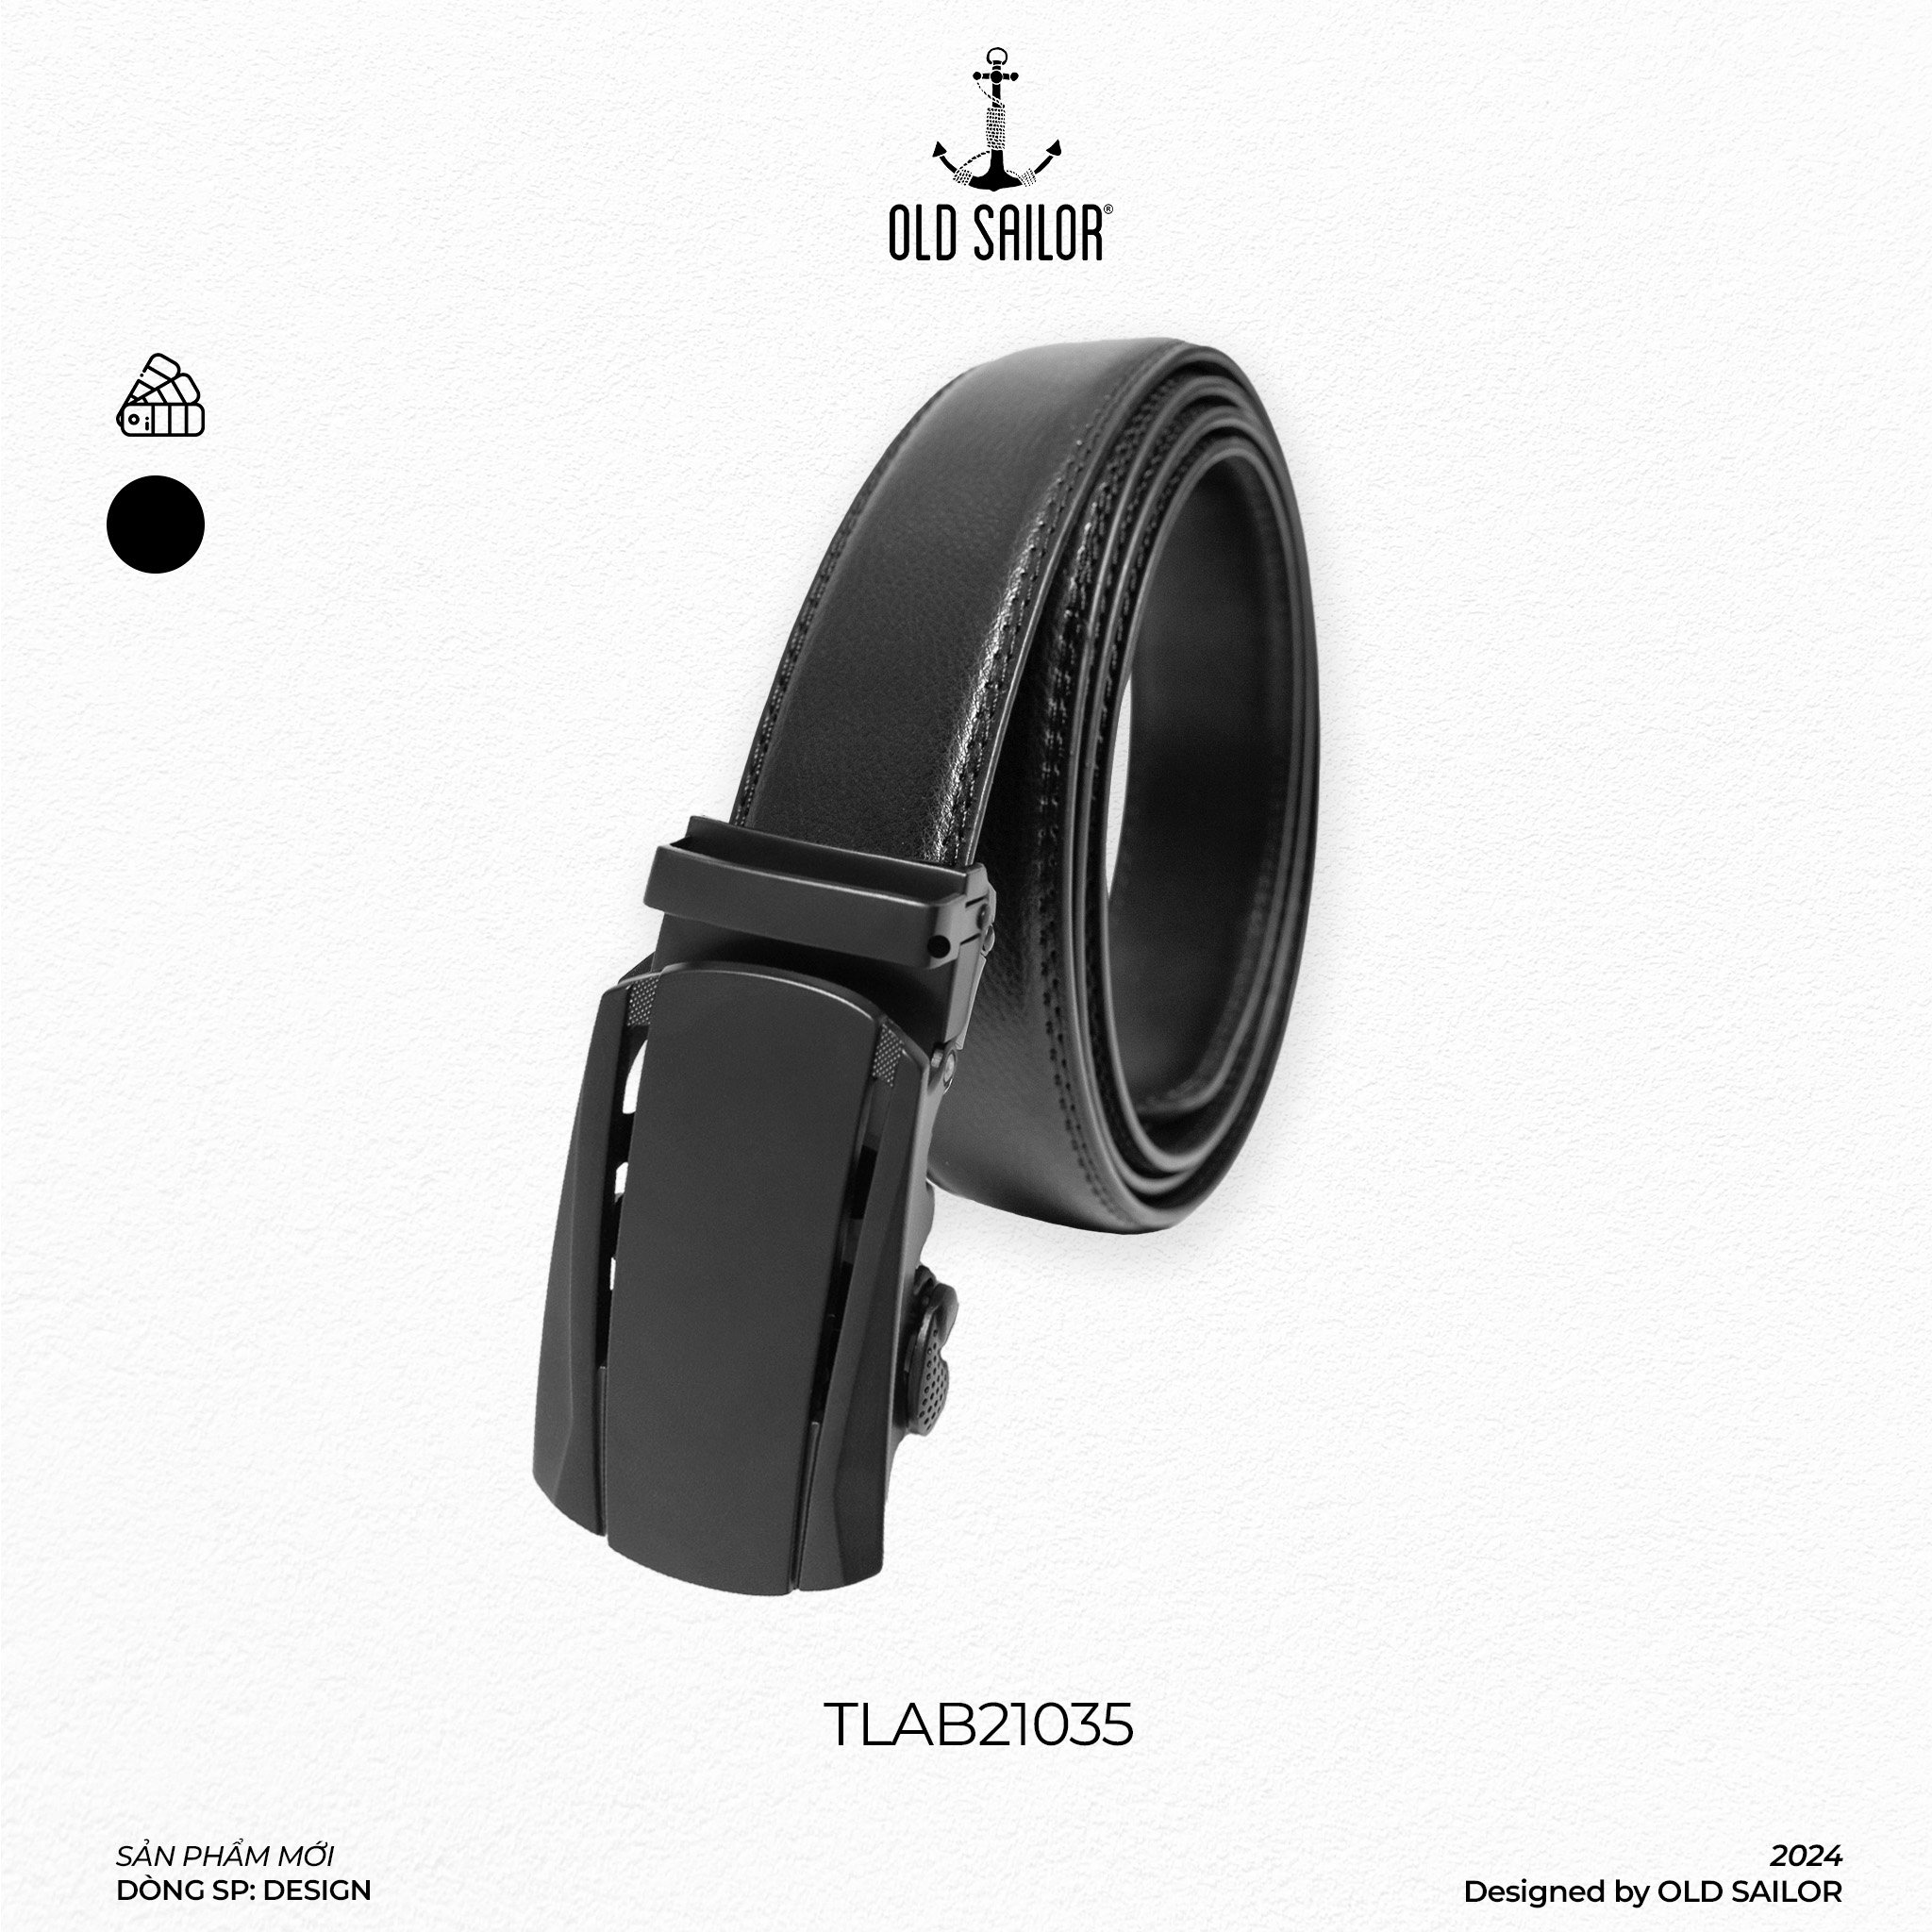 Thắt lưng office belt Old Sailor - TLAB21035 - 1m6 - black